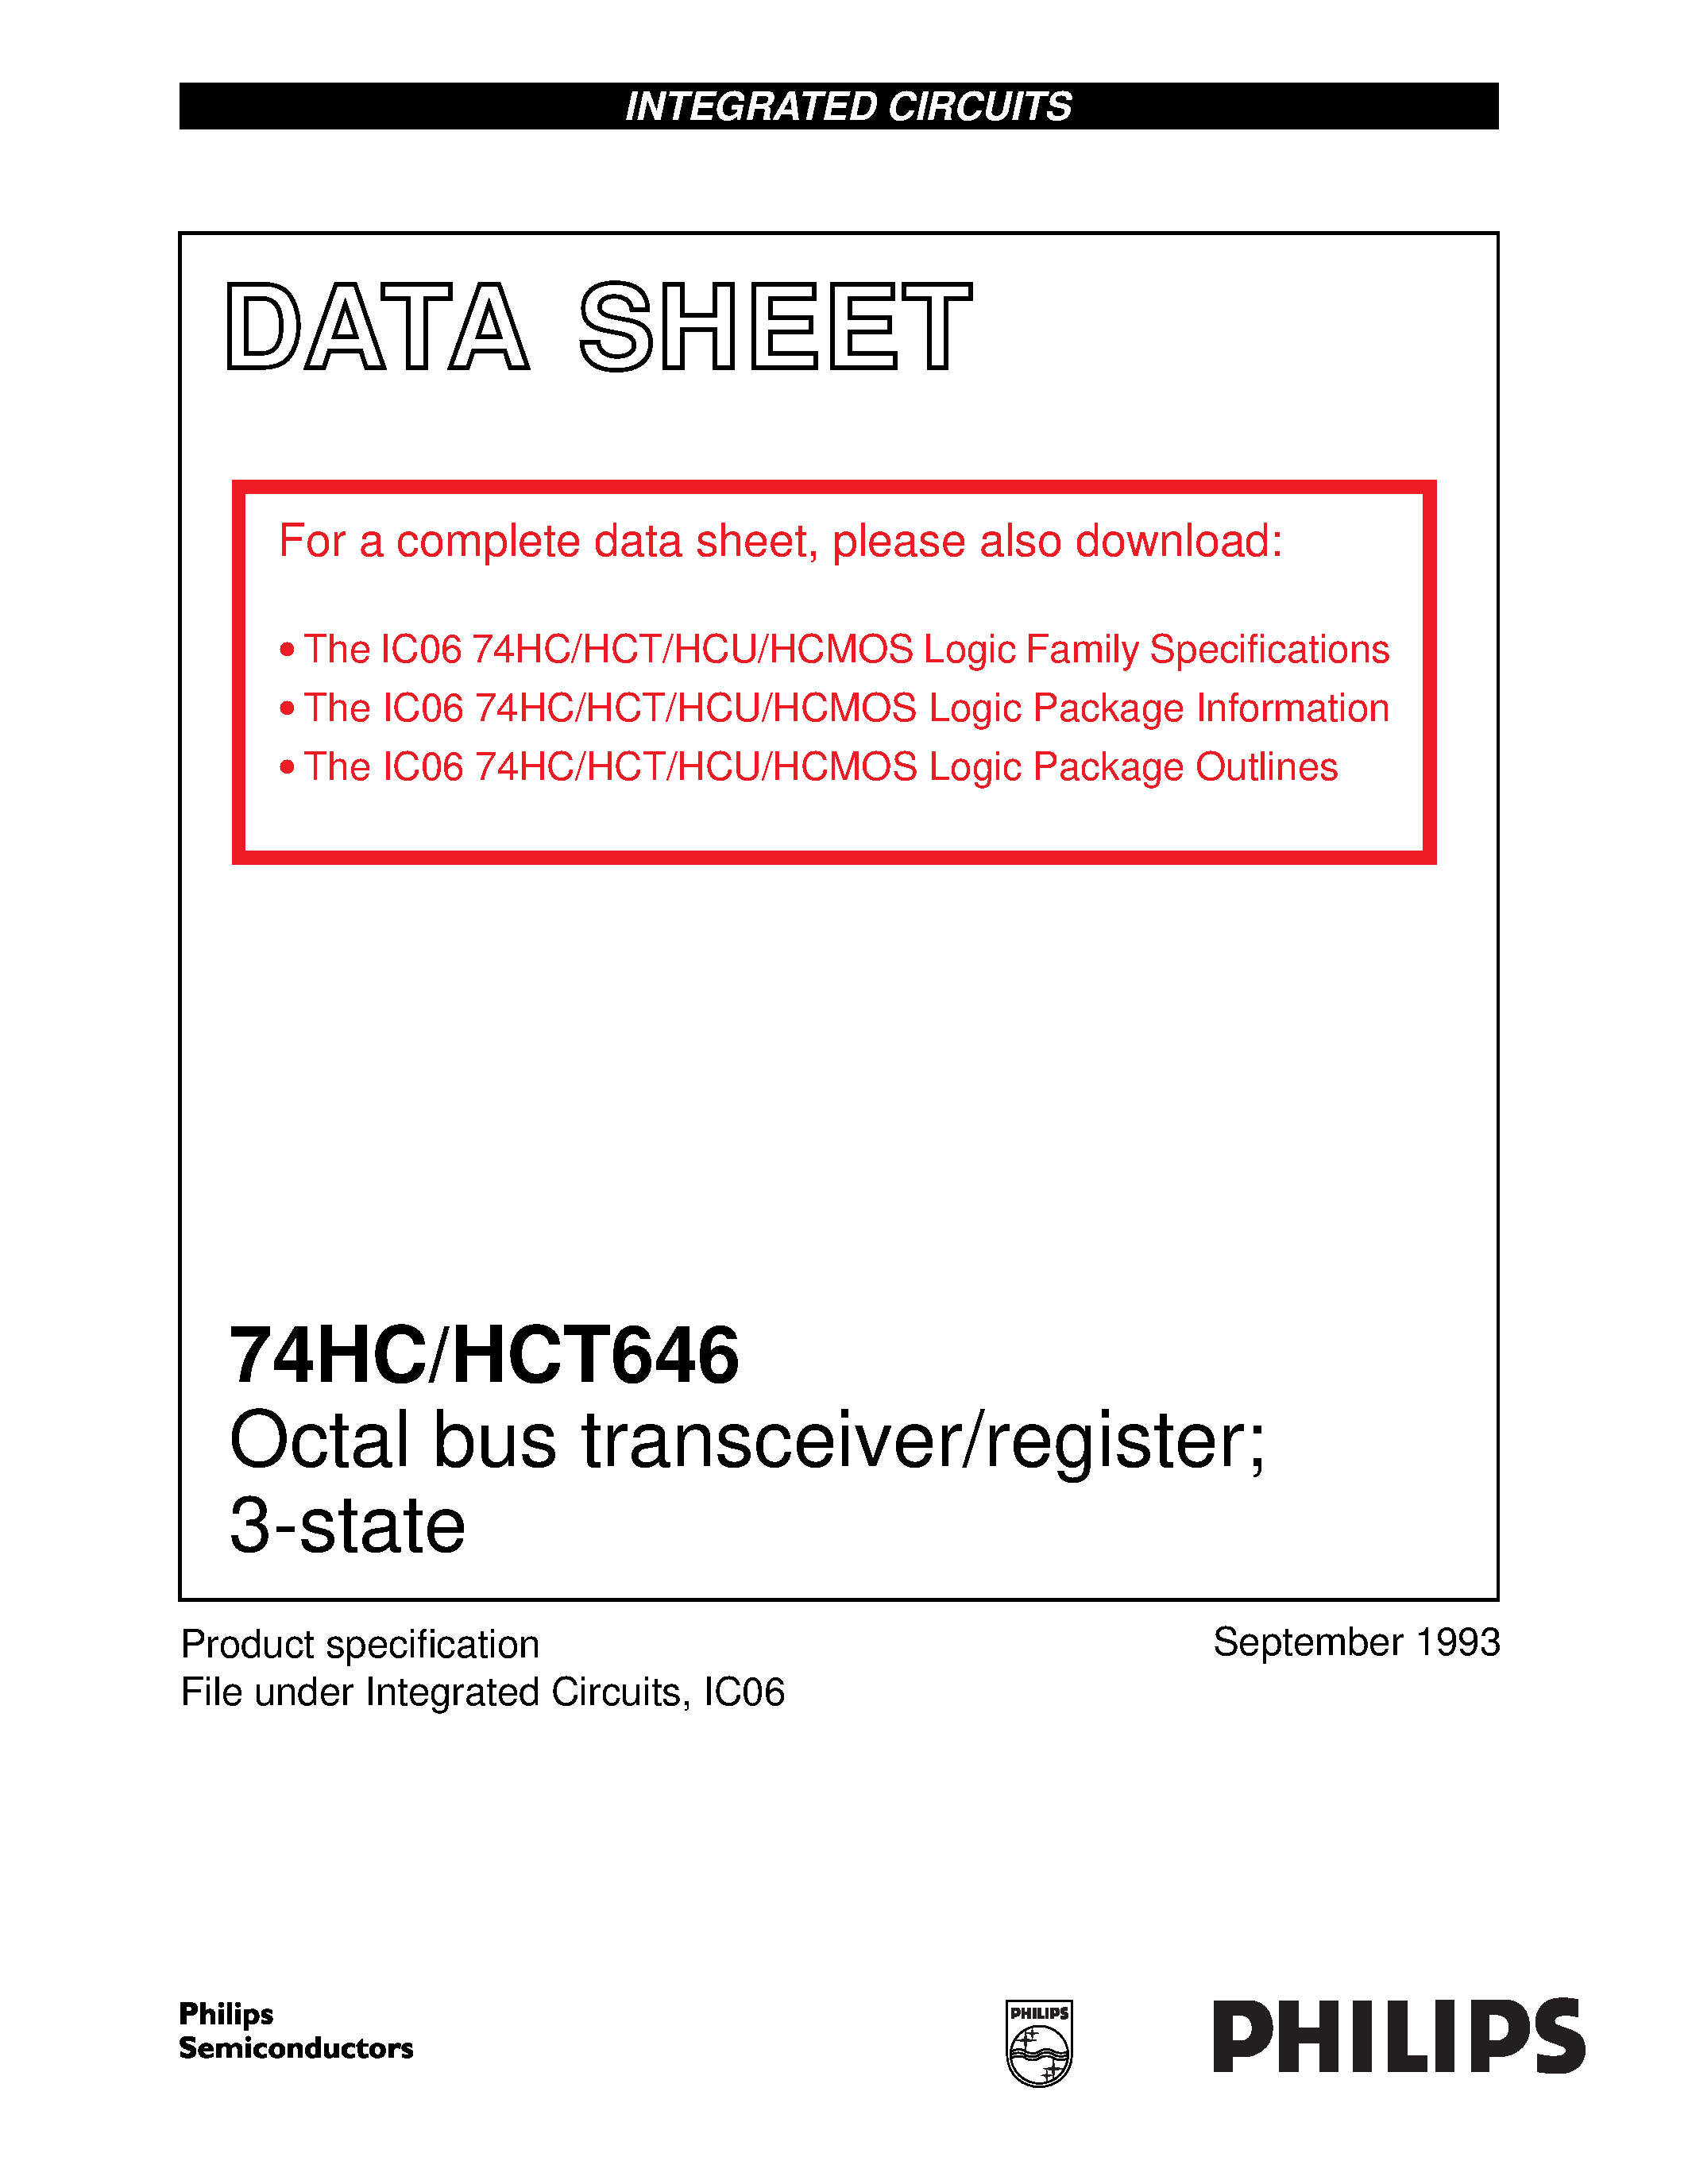 Даташит 74HCT646 - Octal bus transceiver/register; 3-state страница 1